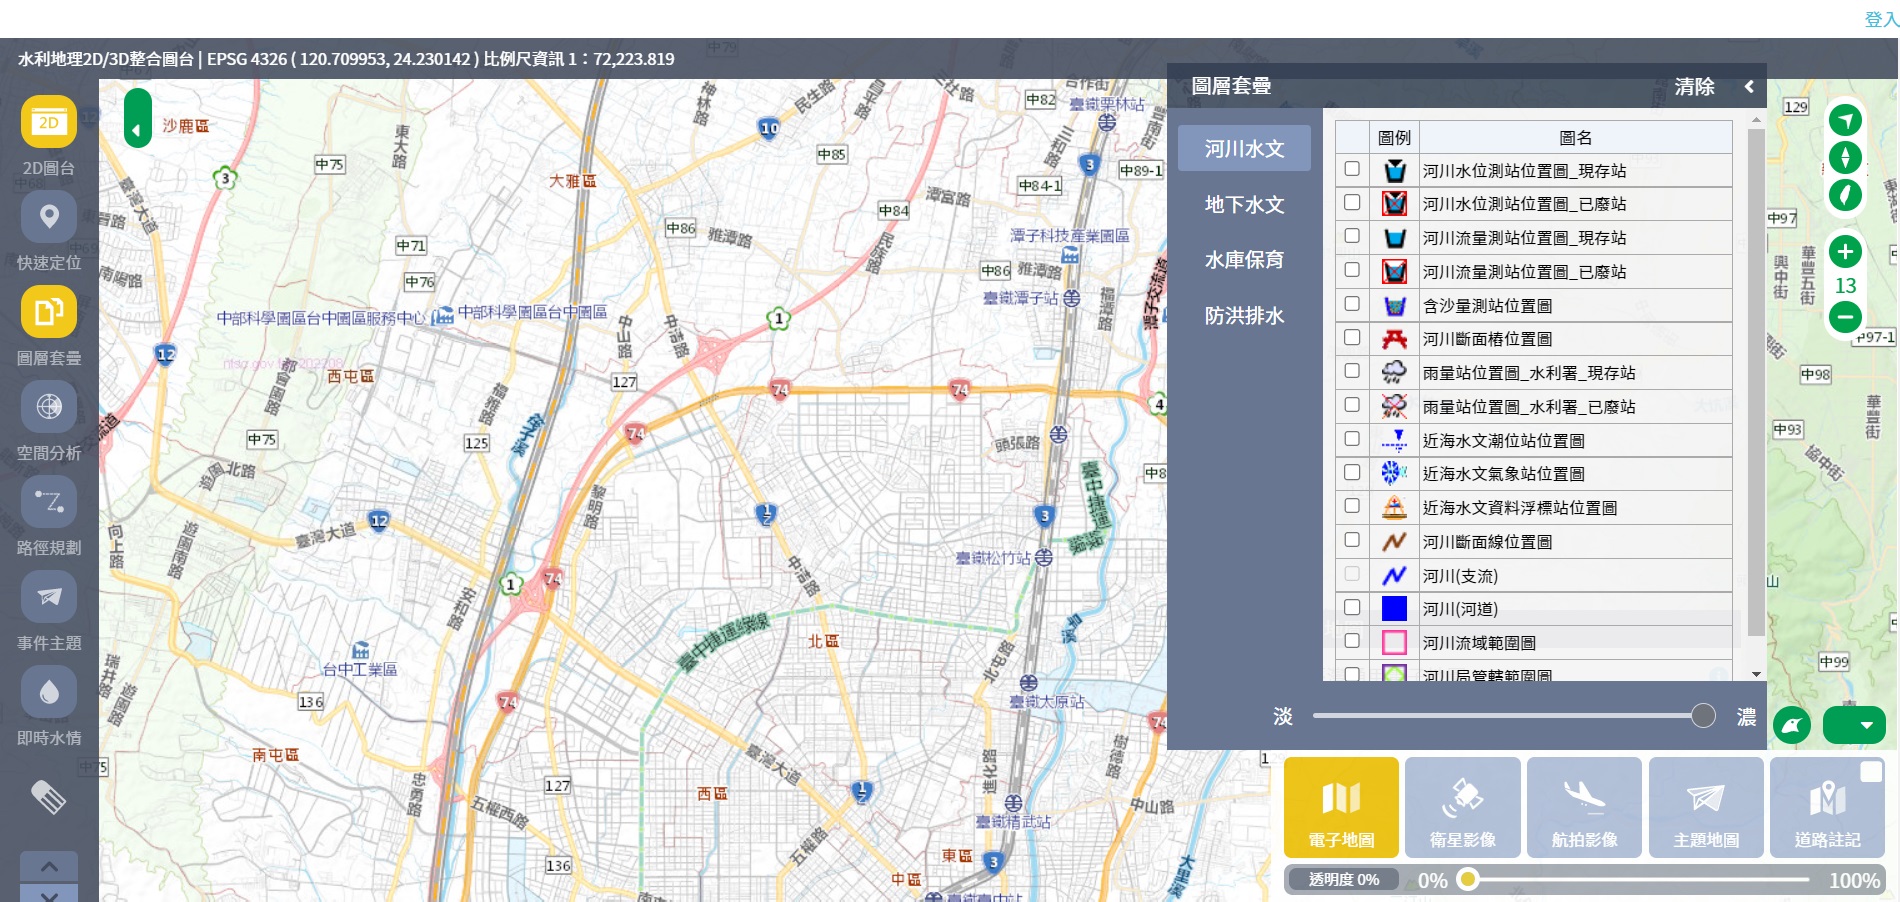 水利地理資訊服務平臺系統畫面